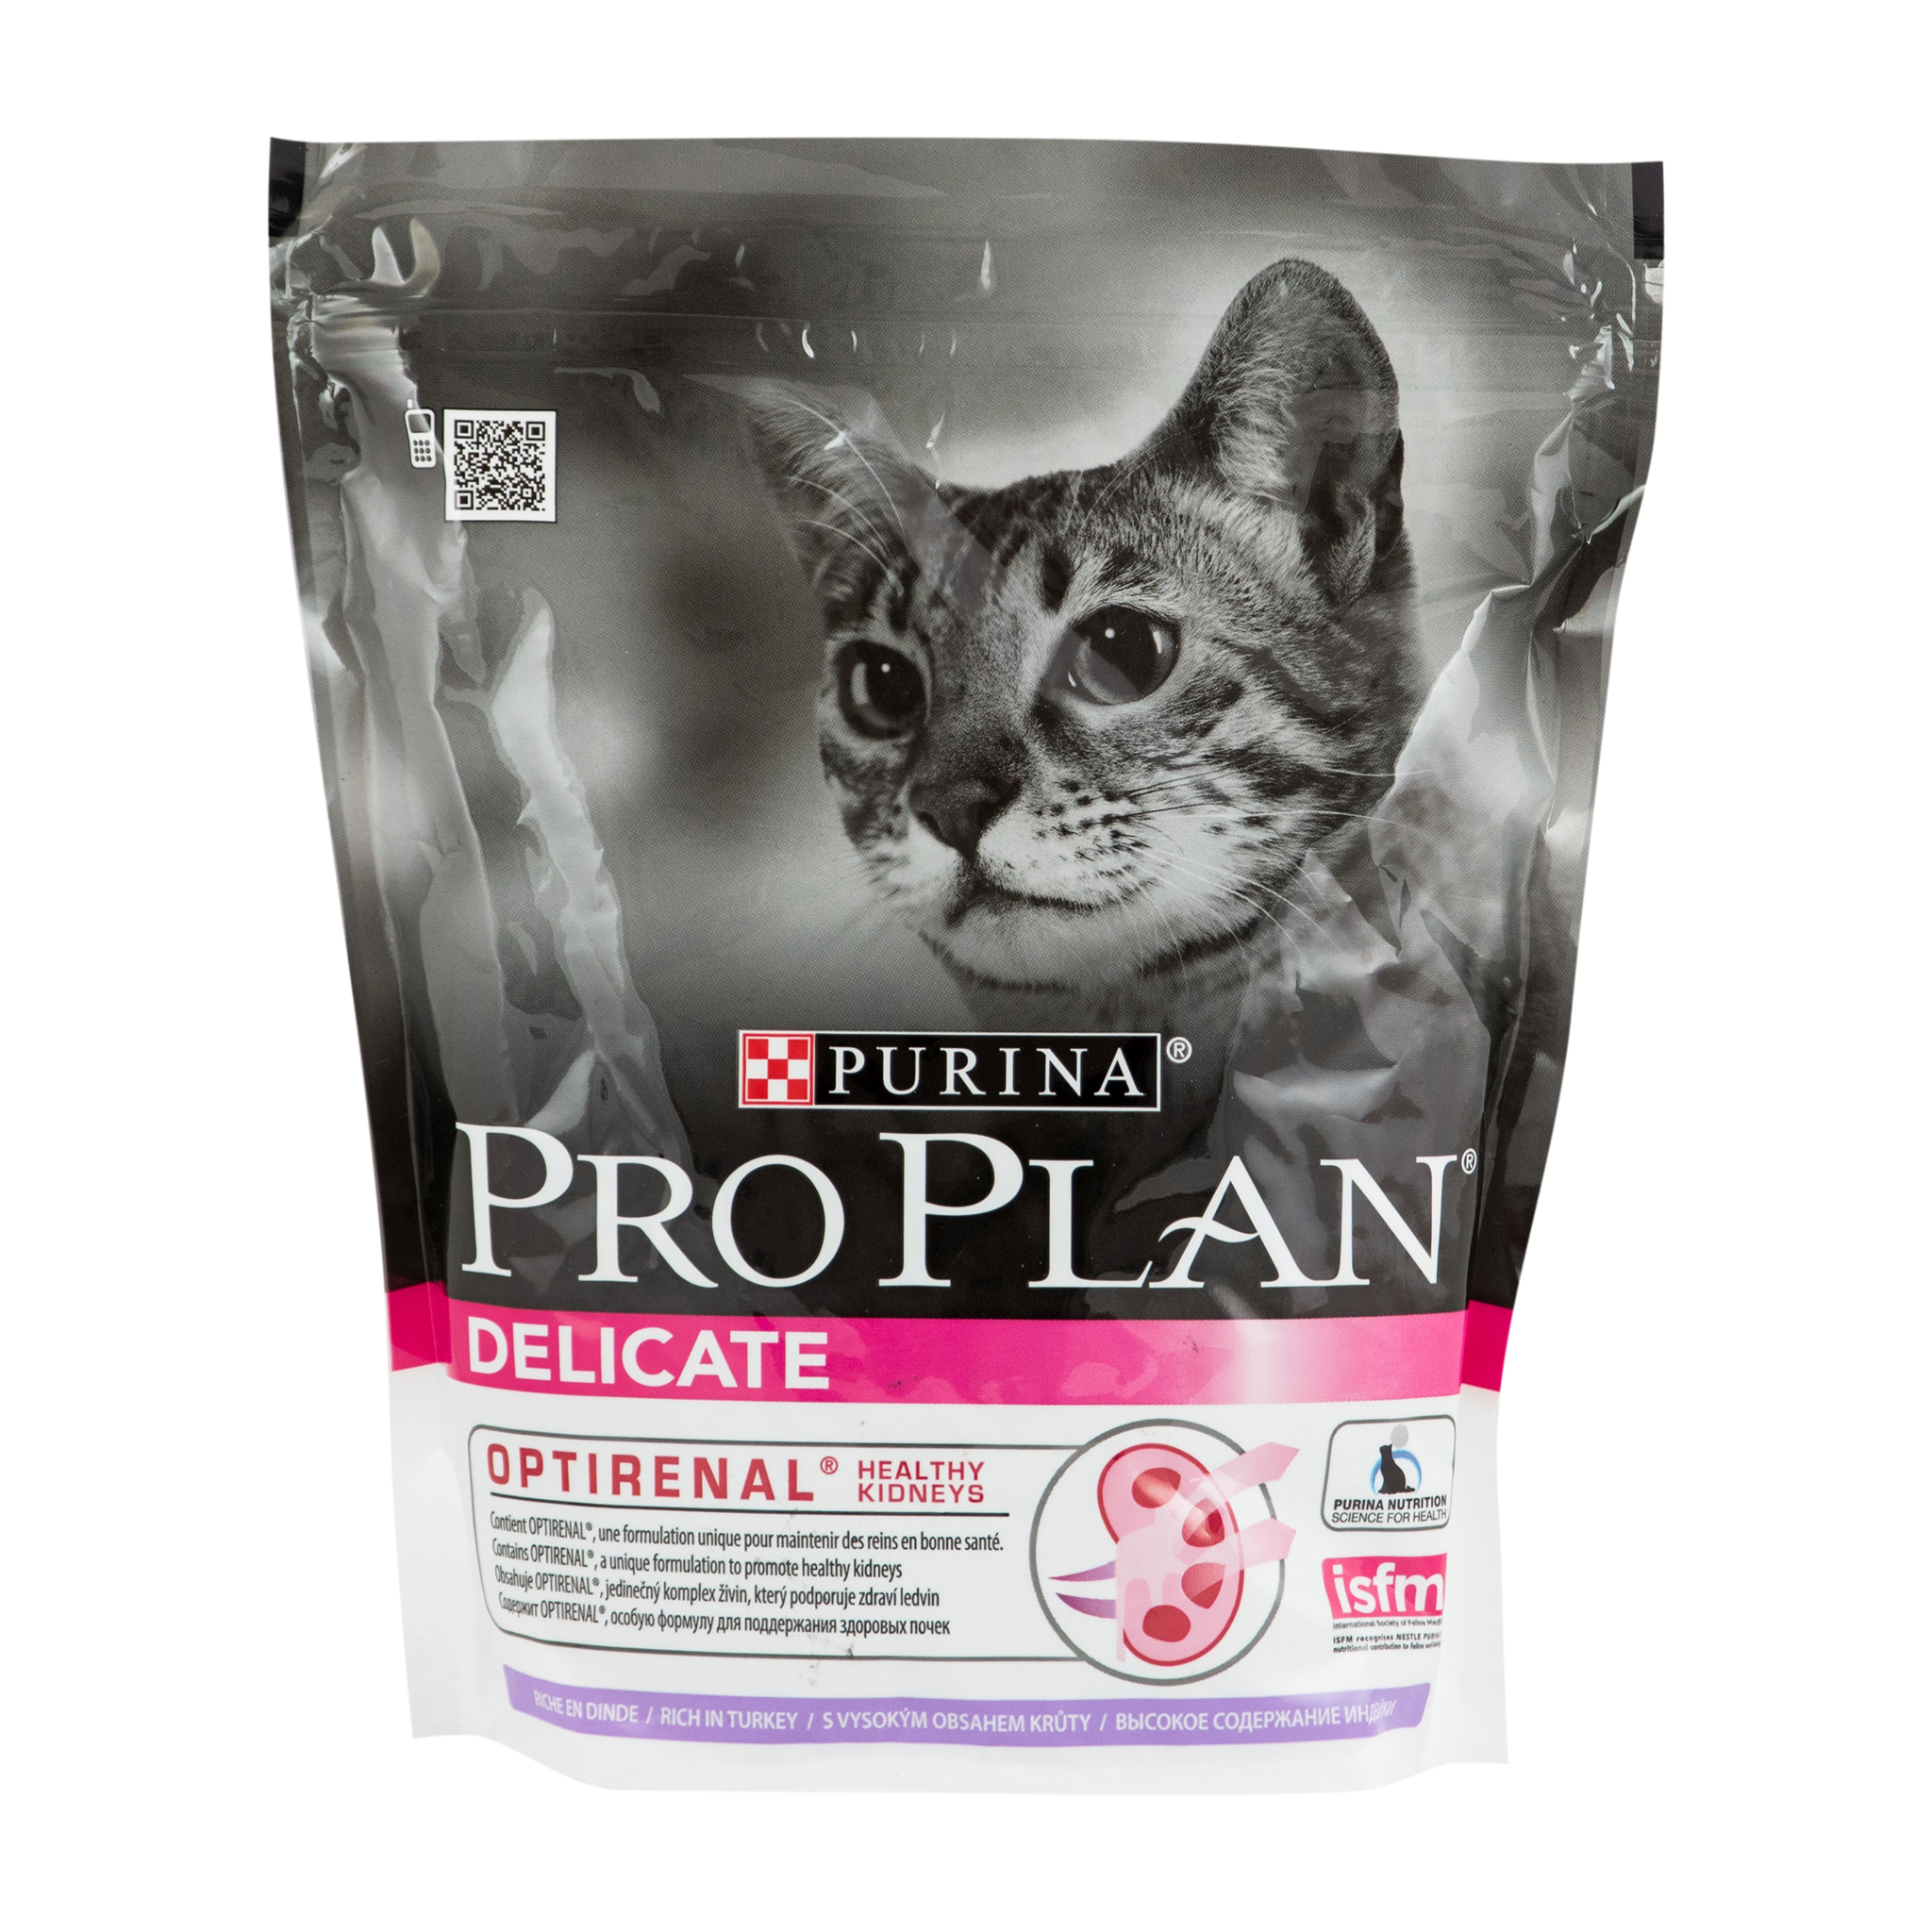 Сухой корм для кошек Purina pro plan с чувствительным пищеварением -  рейтинг 2,91 по отзывам экспертов ☑ Экспертиза состава и производителя |  Роскачество